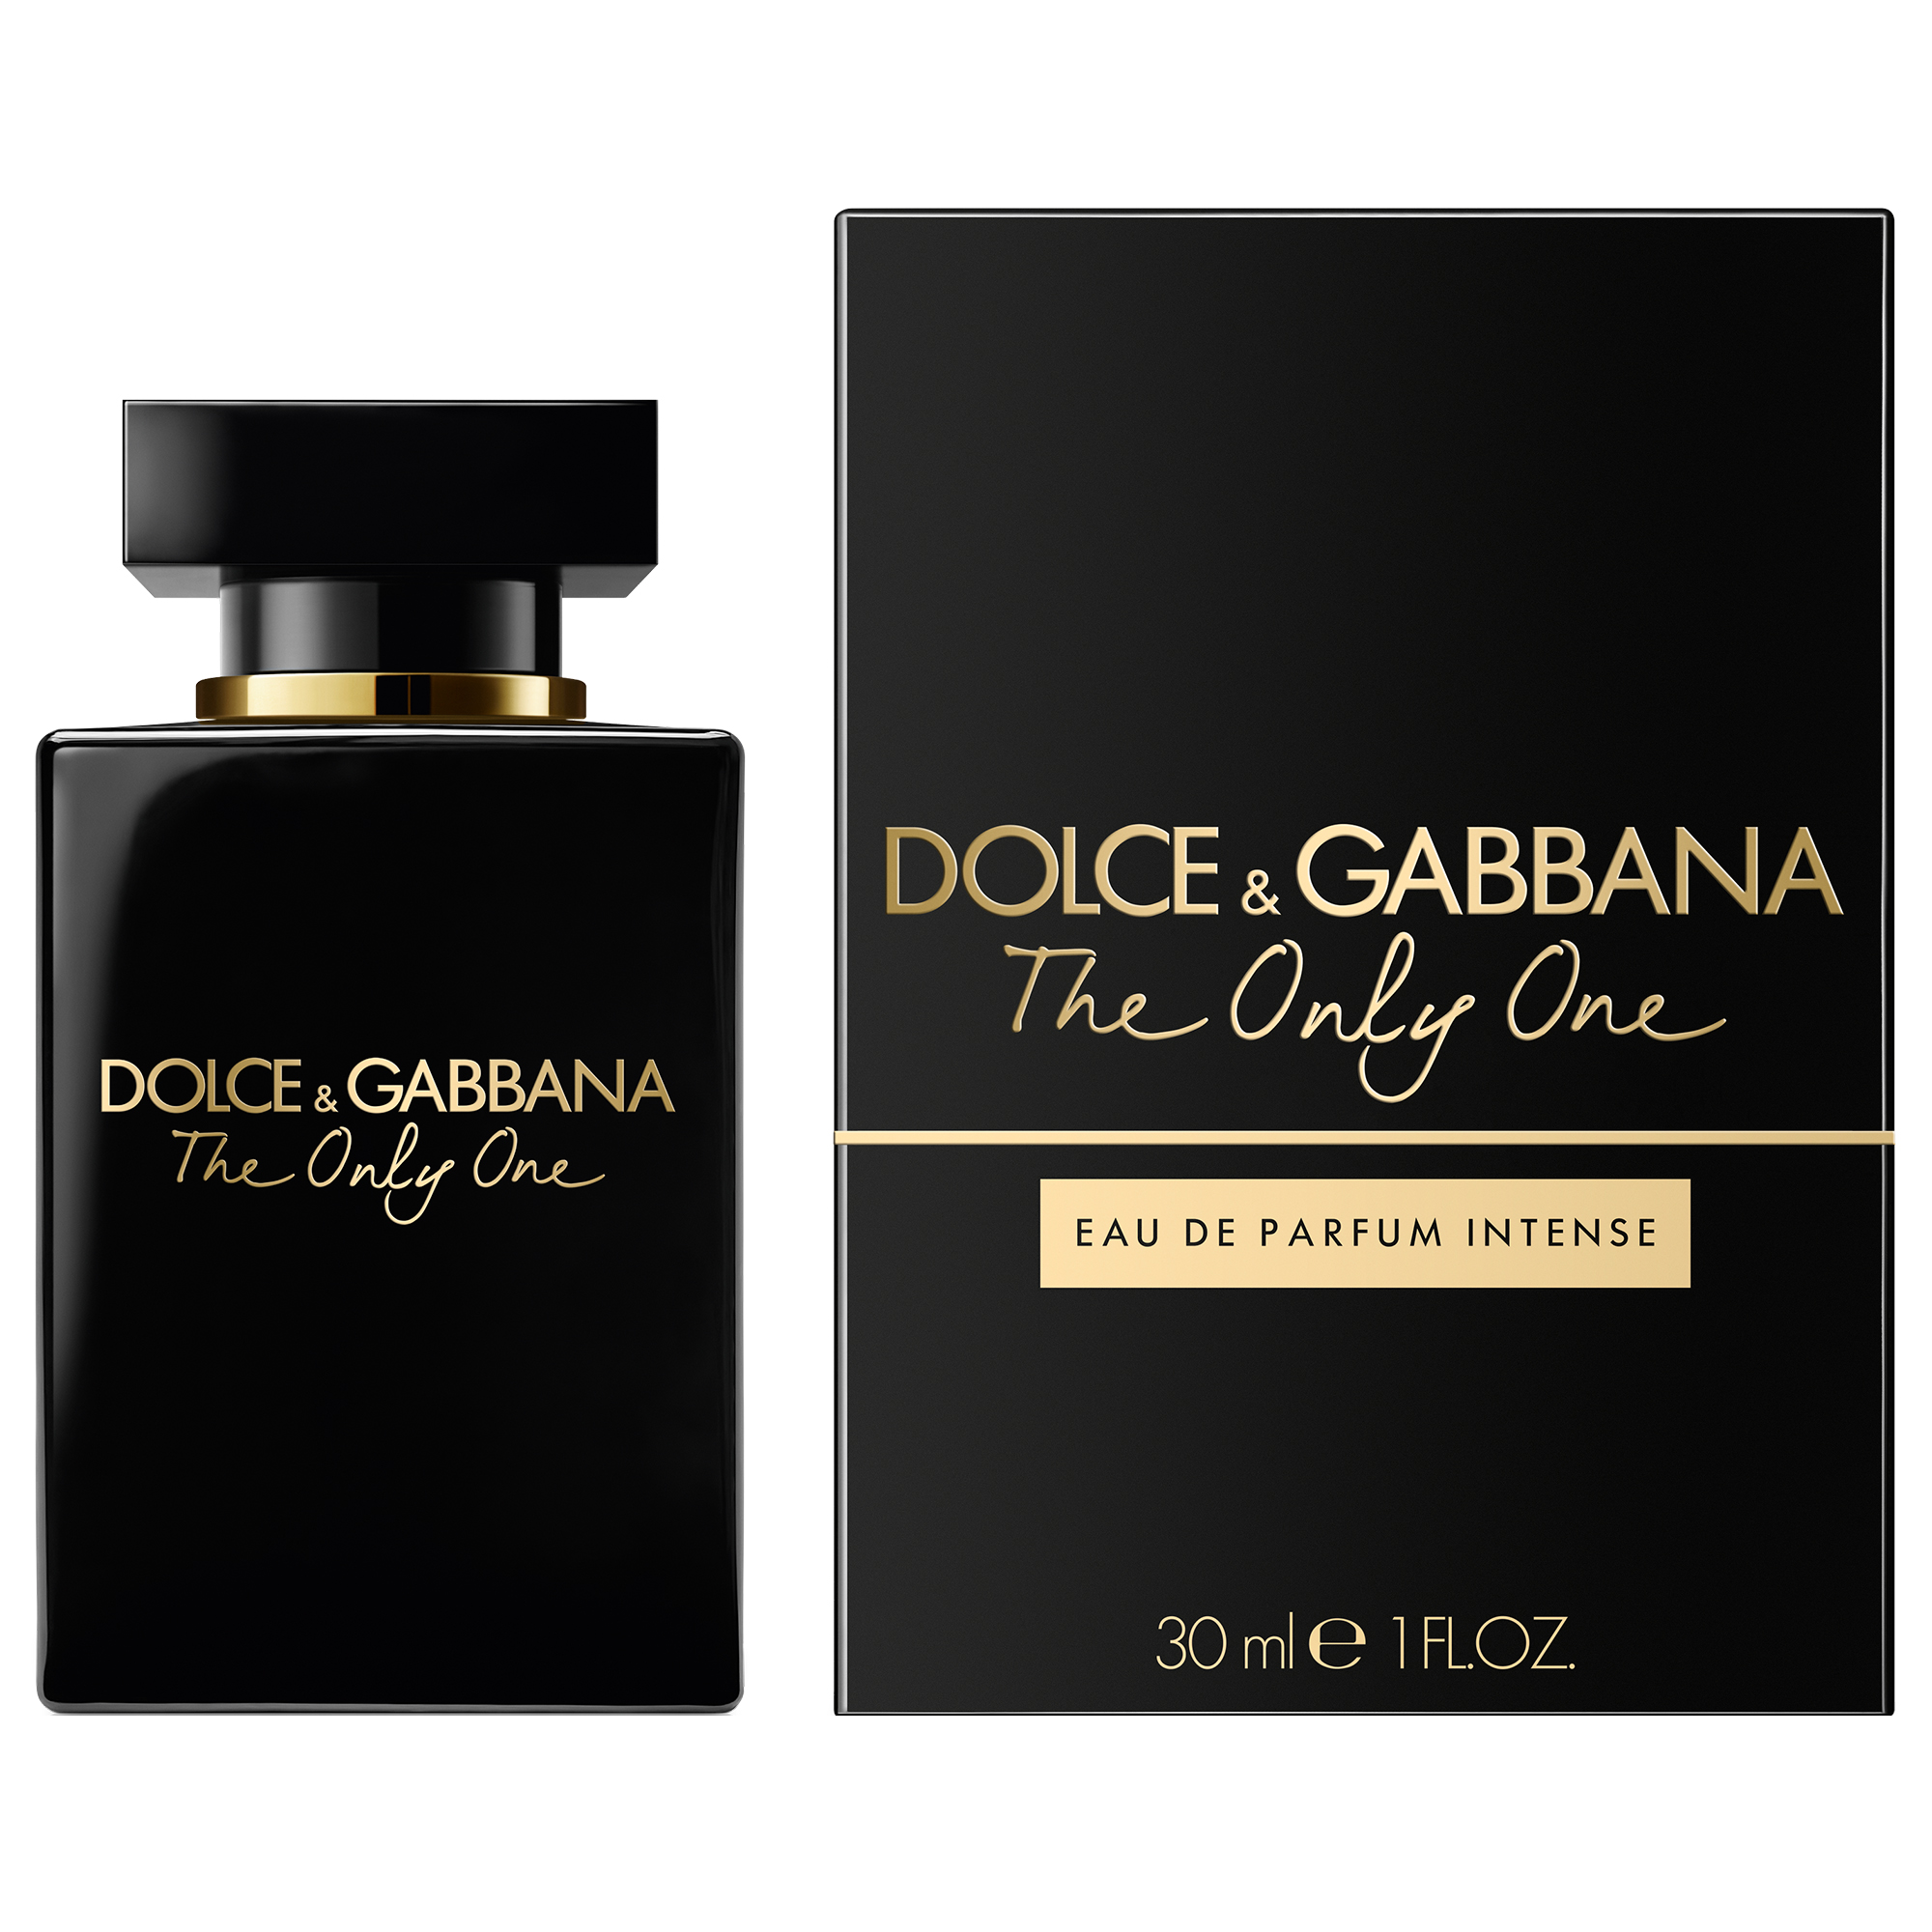 Дольче габбана кью отзывы. Dolce & Gabbana the only one, EDP., 100 ml. Dolce&Gabbana the only one intense EDP (100 ml). Dolce & Gabbana the only one EDP 50 ml. Dolce Gabbana the only one 2 100 мл.